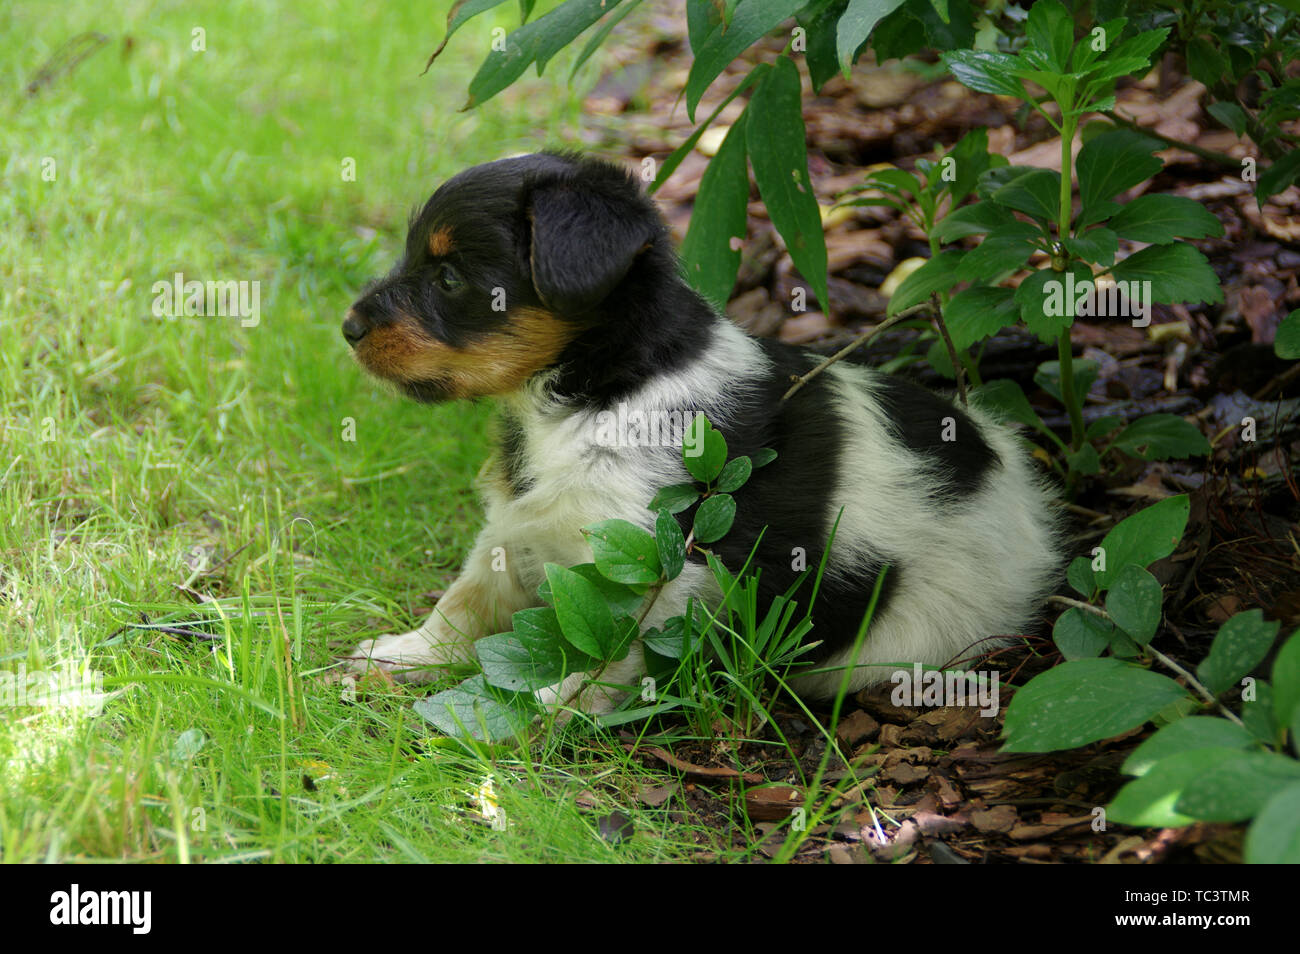 Il cucciolo è seduto sull'erba. Il ritratto del piccolo cane arriva a conoscere il mondo con curiosità. Foto Stock